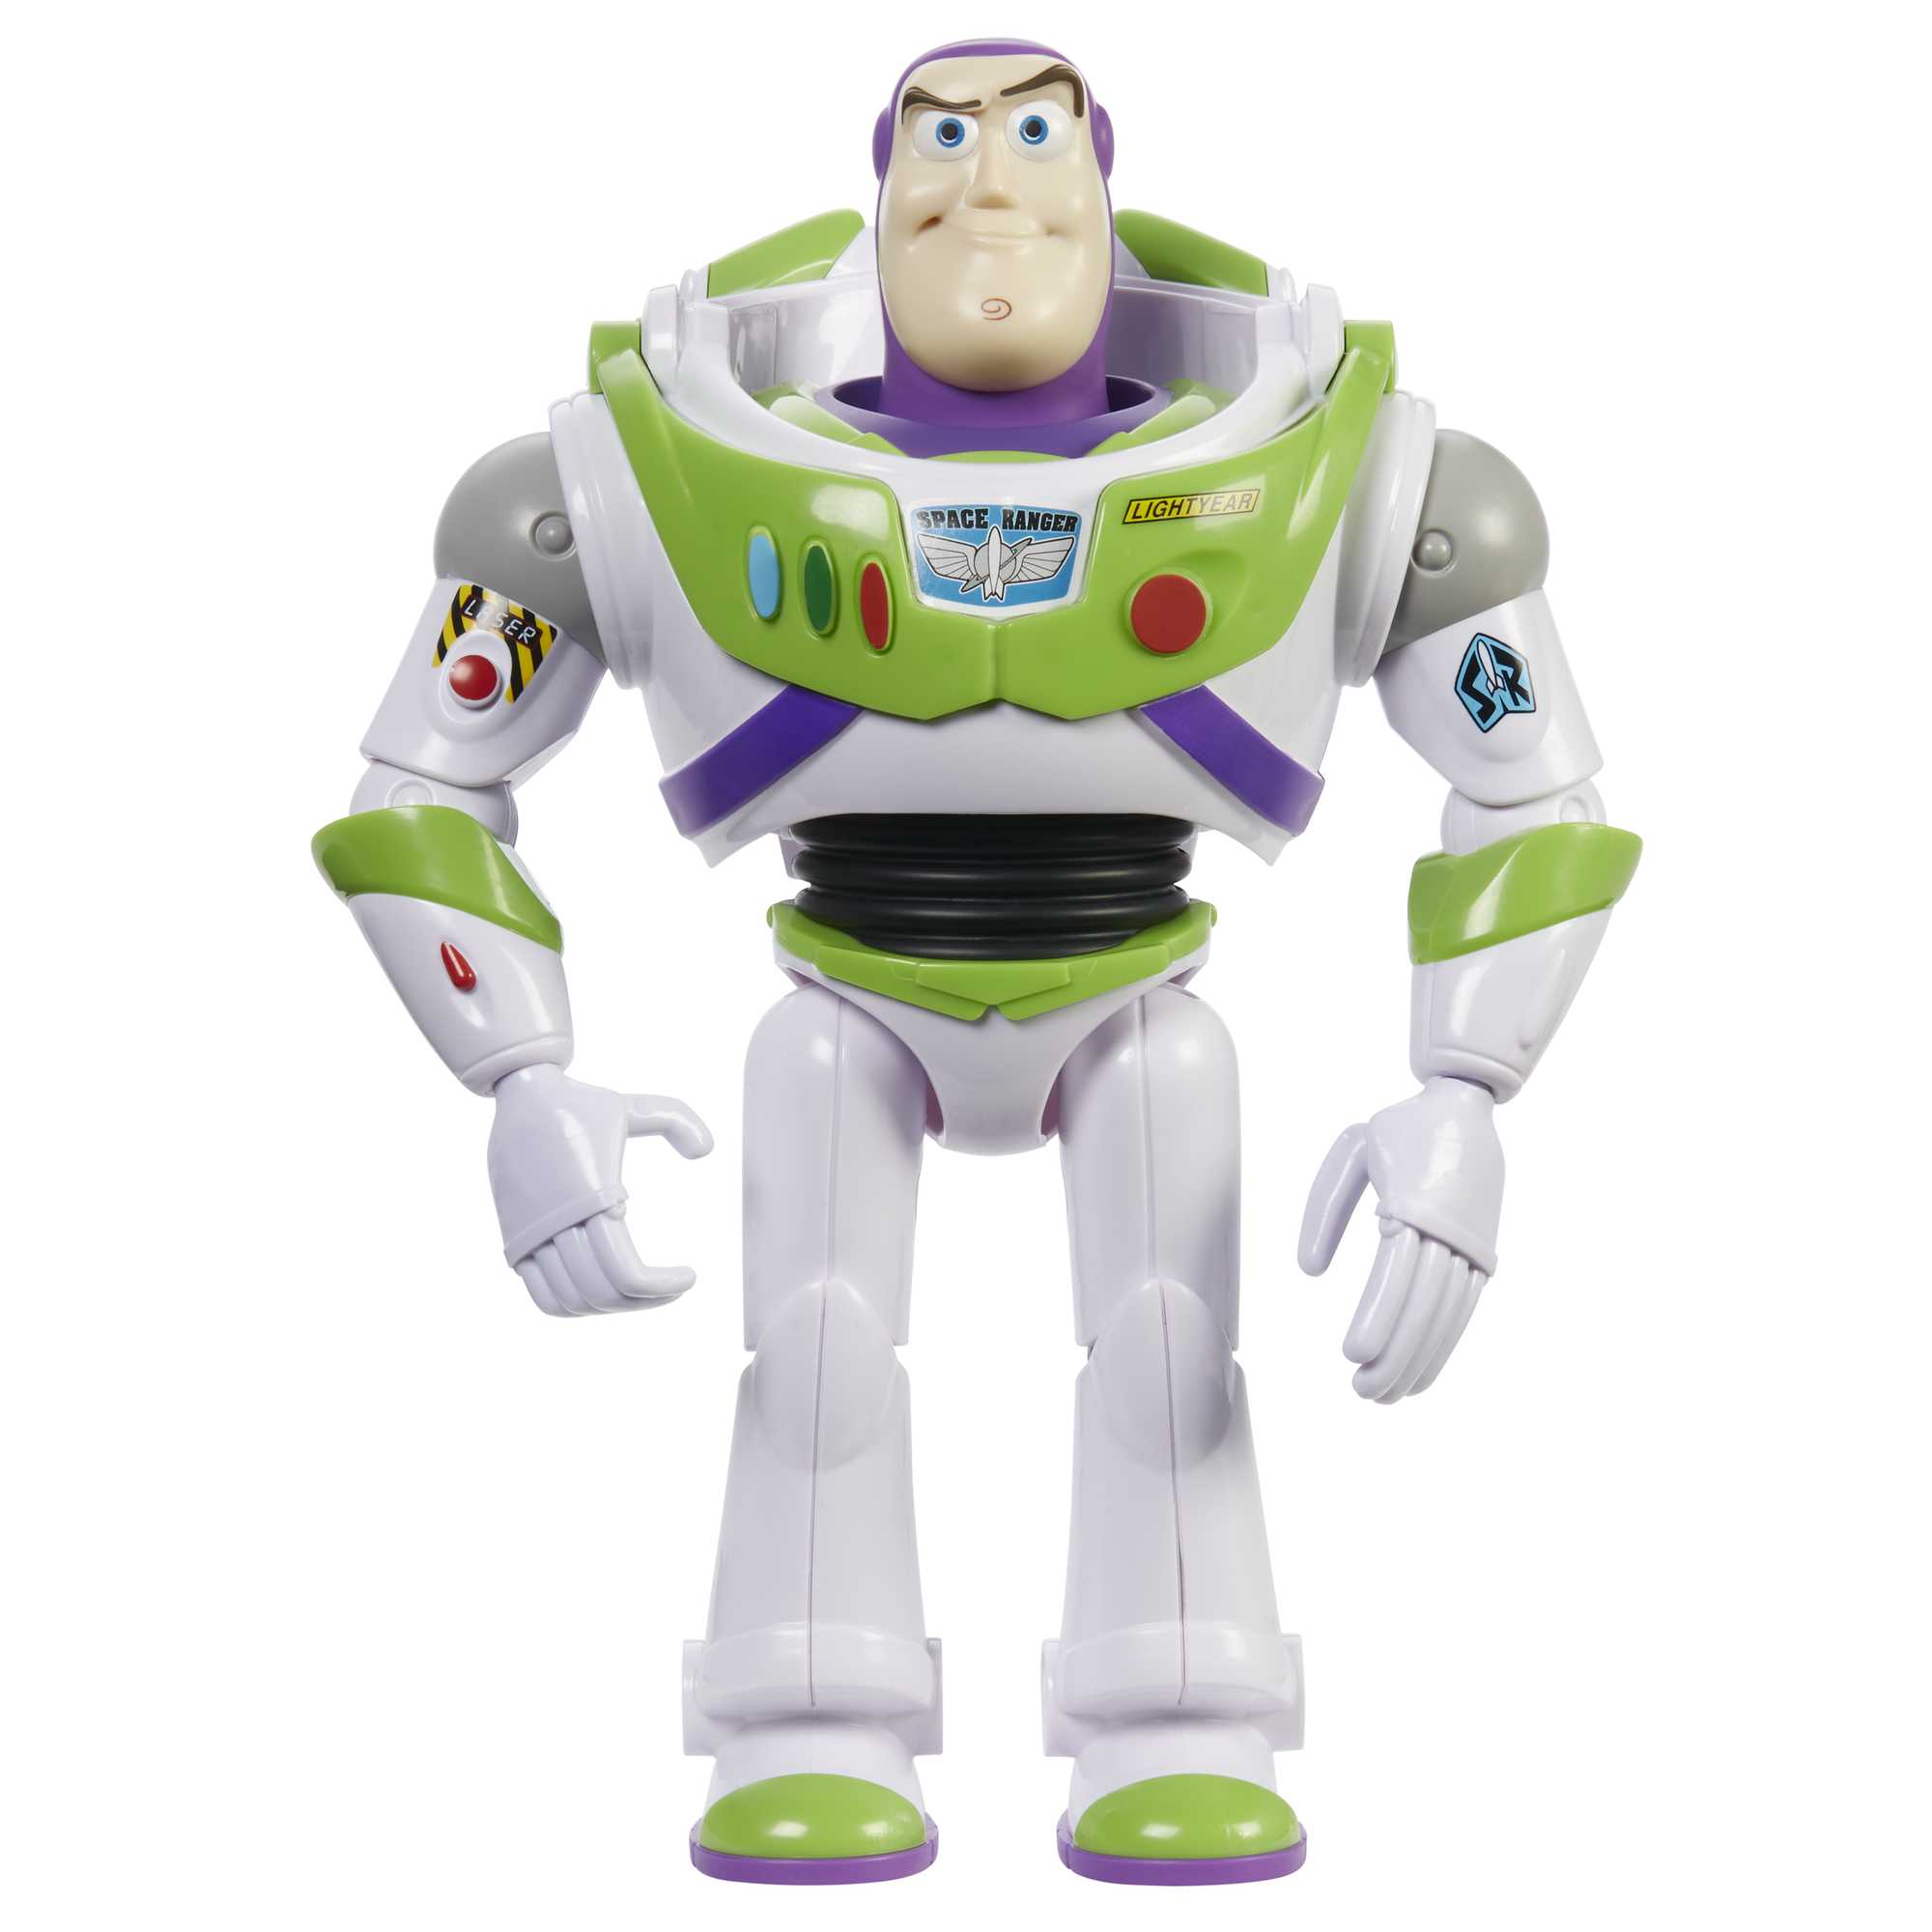 Buzz l'éclair aussi bien que Toy Story ? Les premiers avis sont tombés !